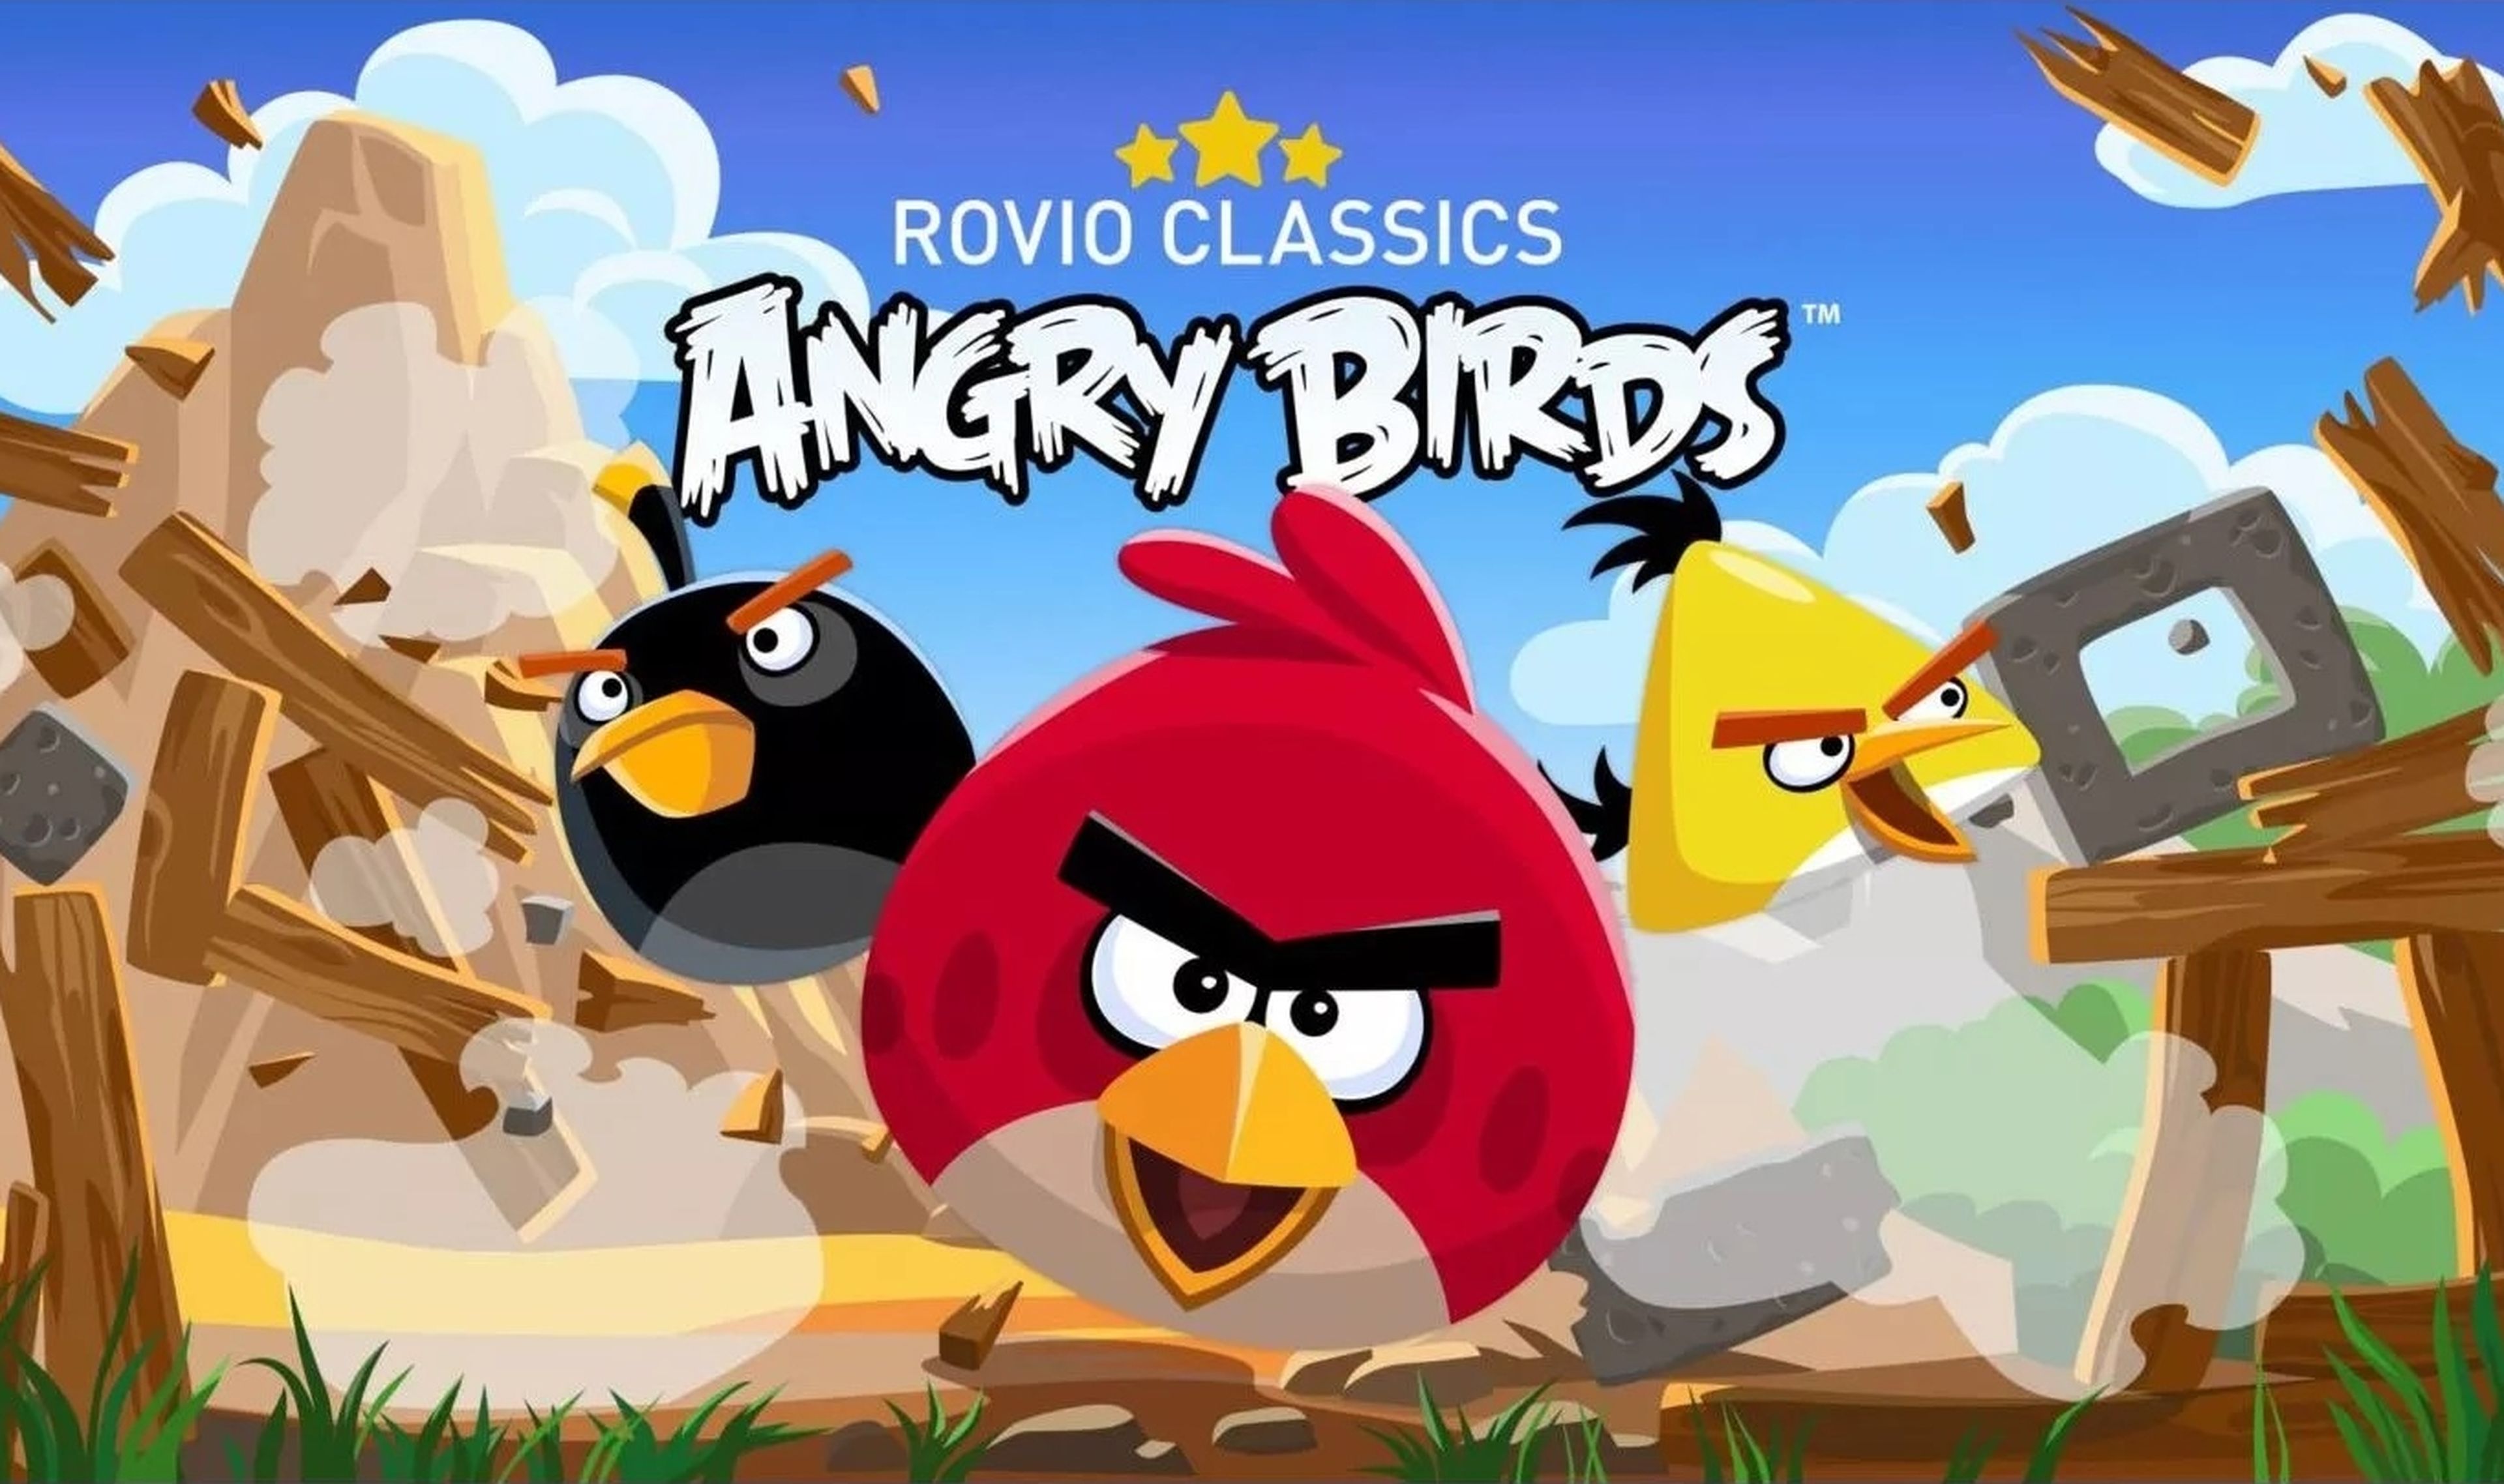 El clásico Angry Birds regresa a iOS y Android tres años después de desaparecer